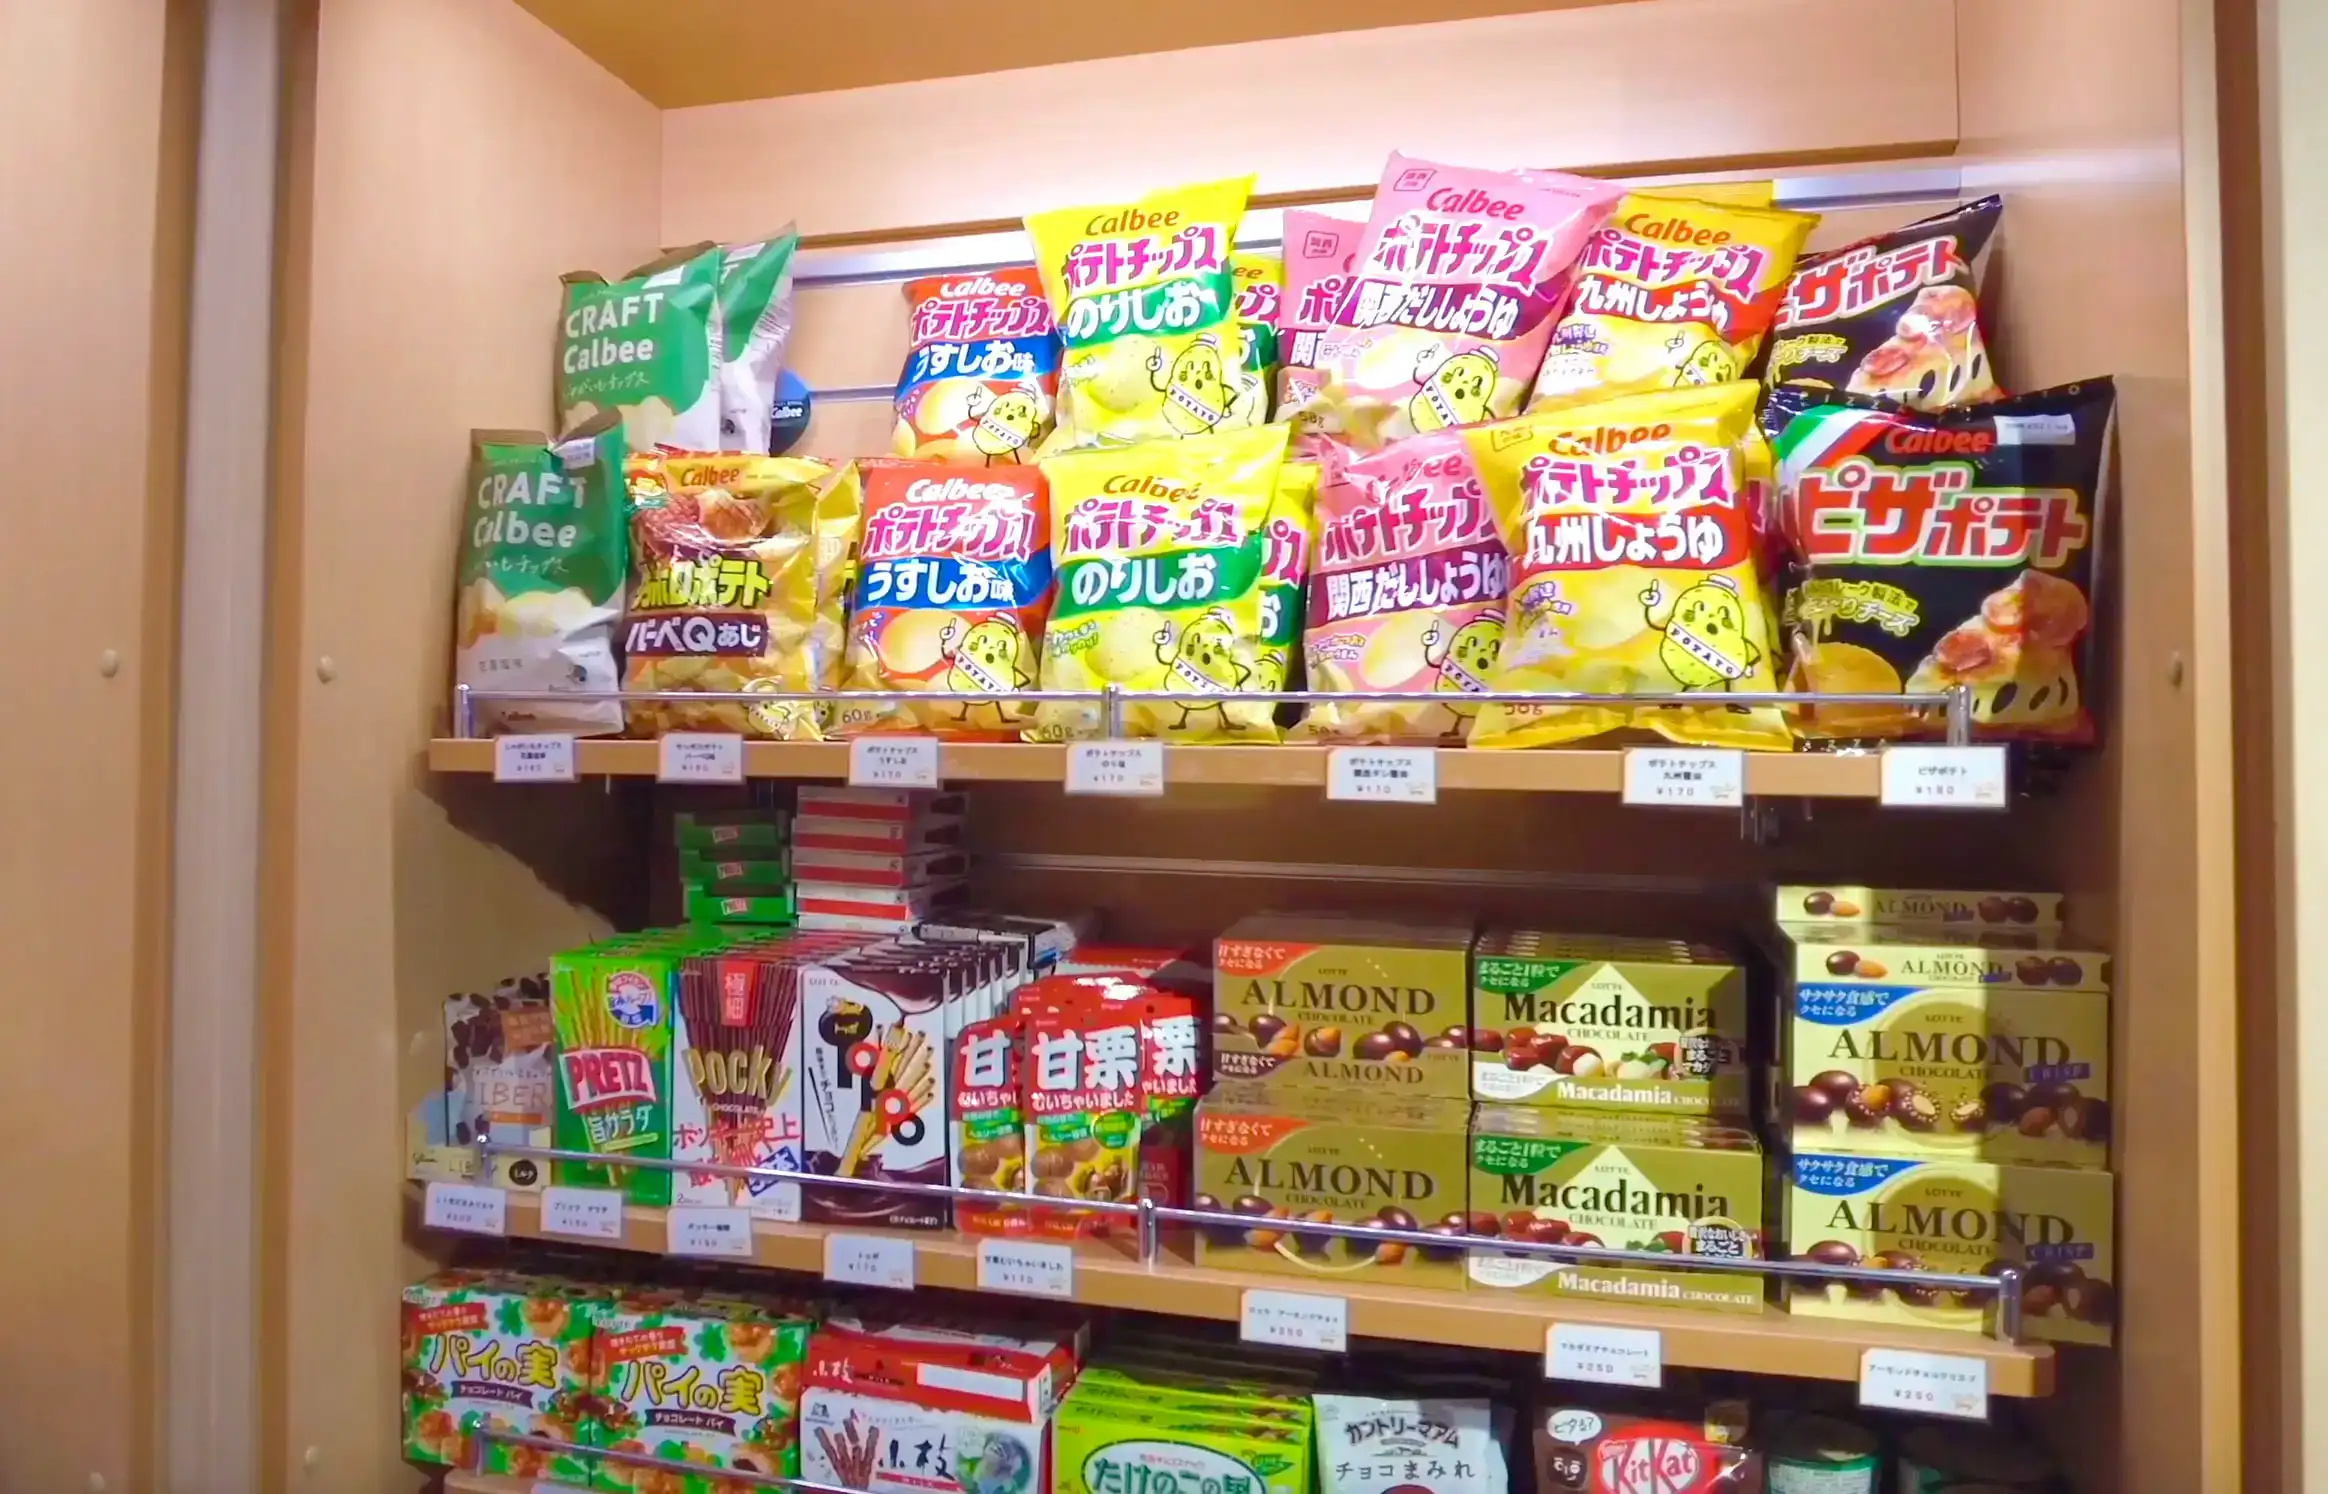 阪九フェリーひびき船内の売店のお菓子